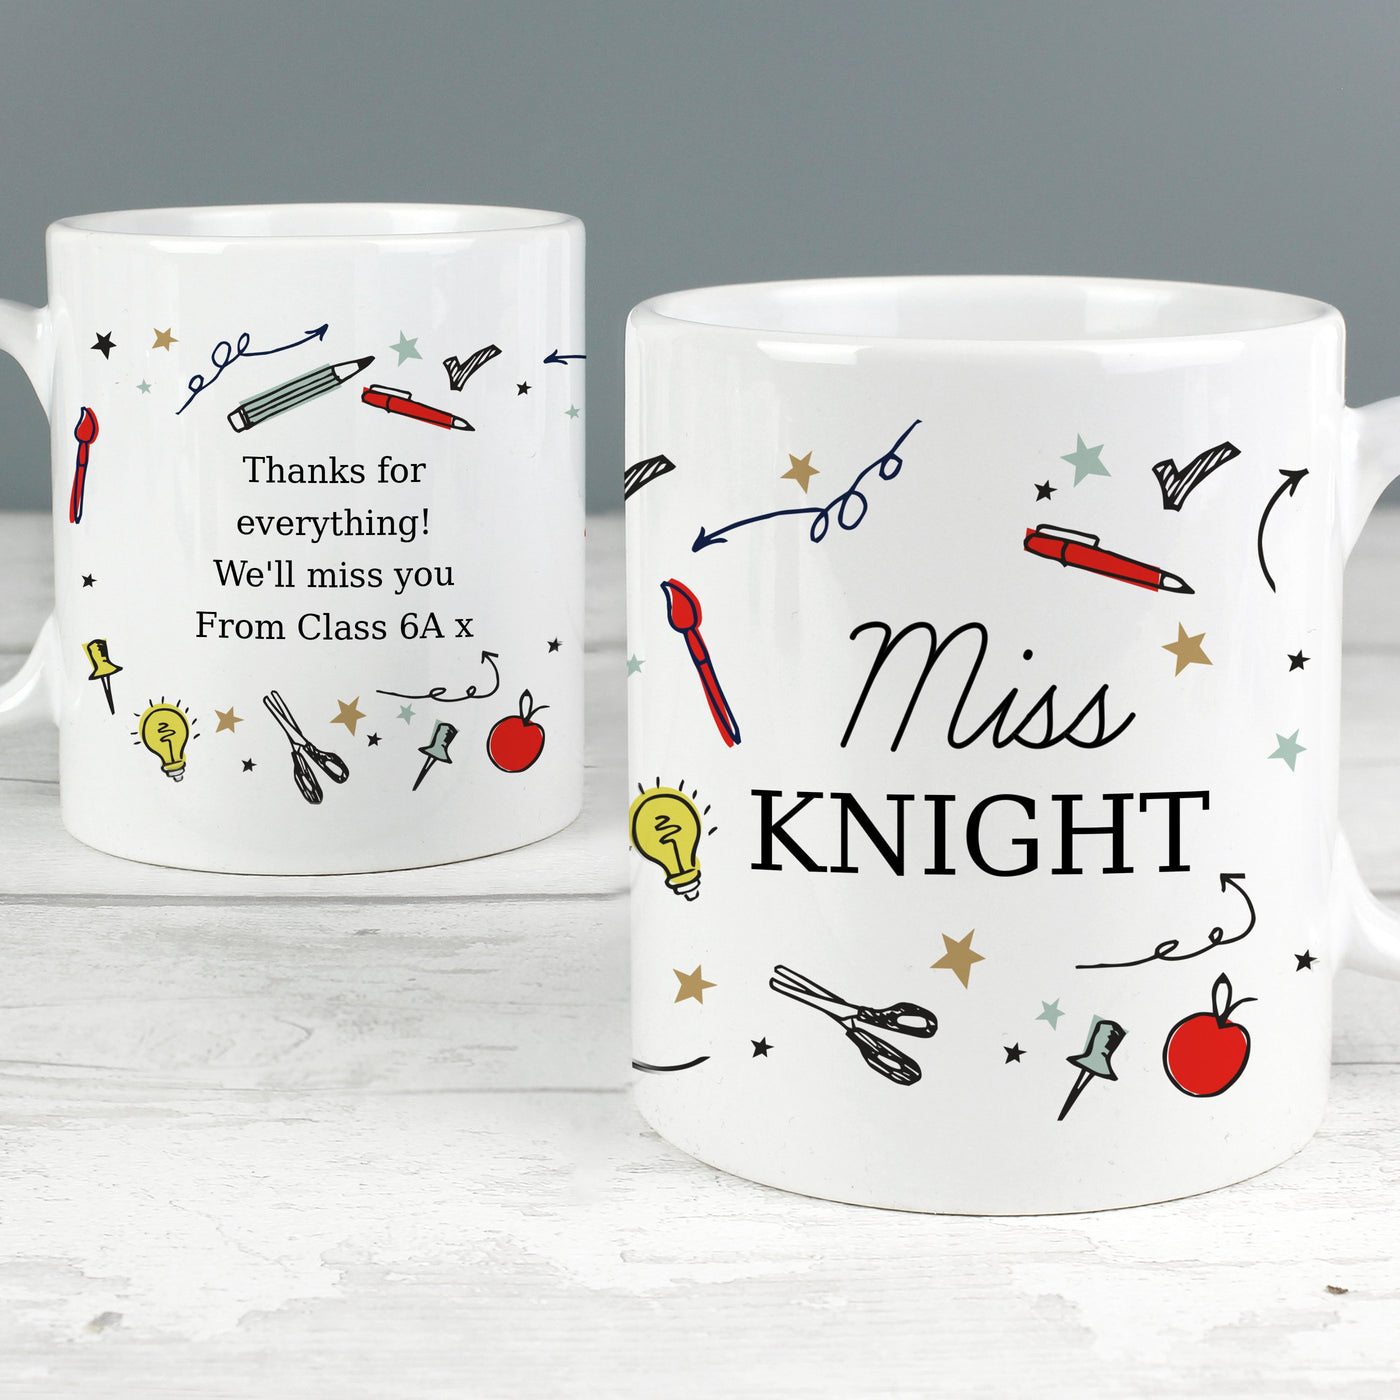 Personalised School Teachers Ceramic Mug - Shop Personalised Gifts